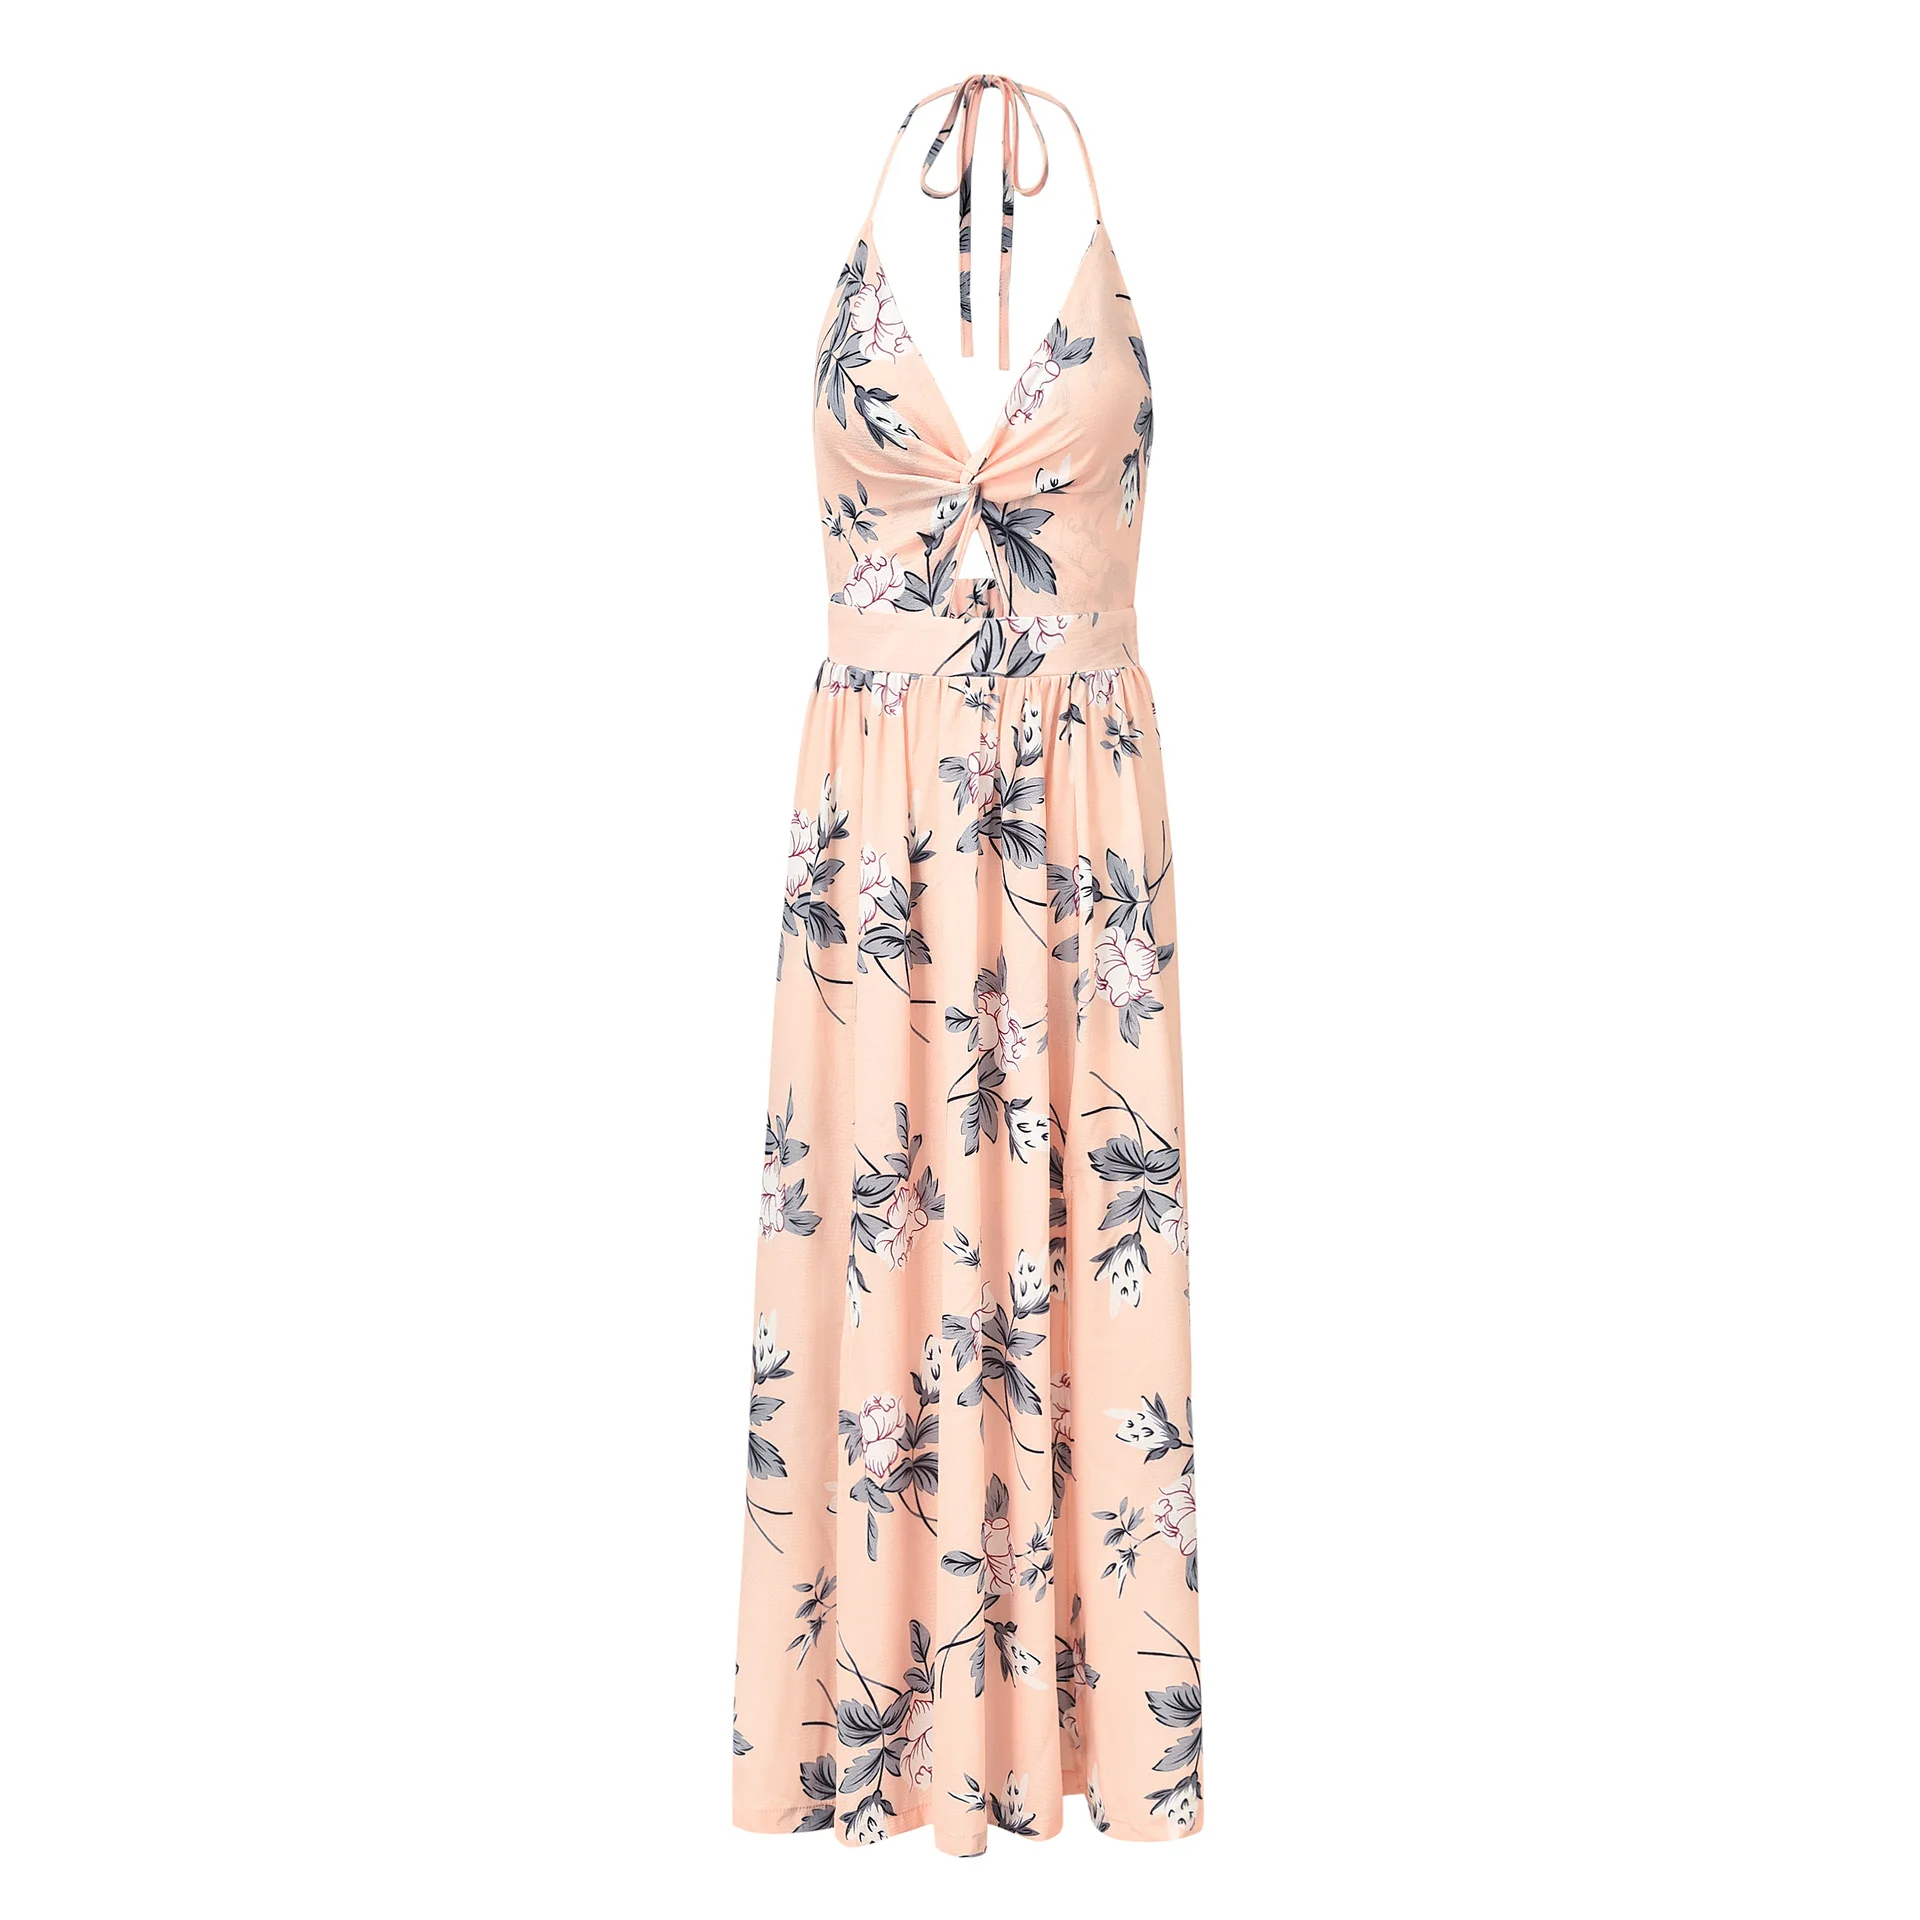 UZZDSS женщины; Лето; в стиле бохо Макси длинное платье вечернее пляжное платье Сарафан Цветочный Холтер летнее 2019